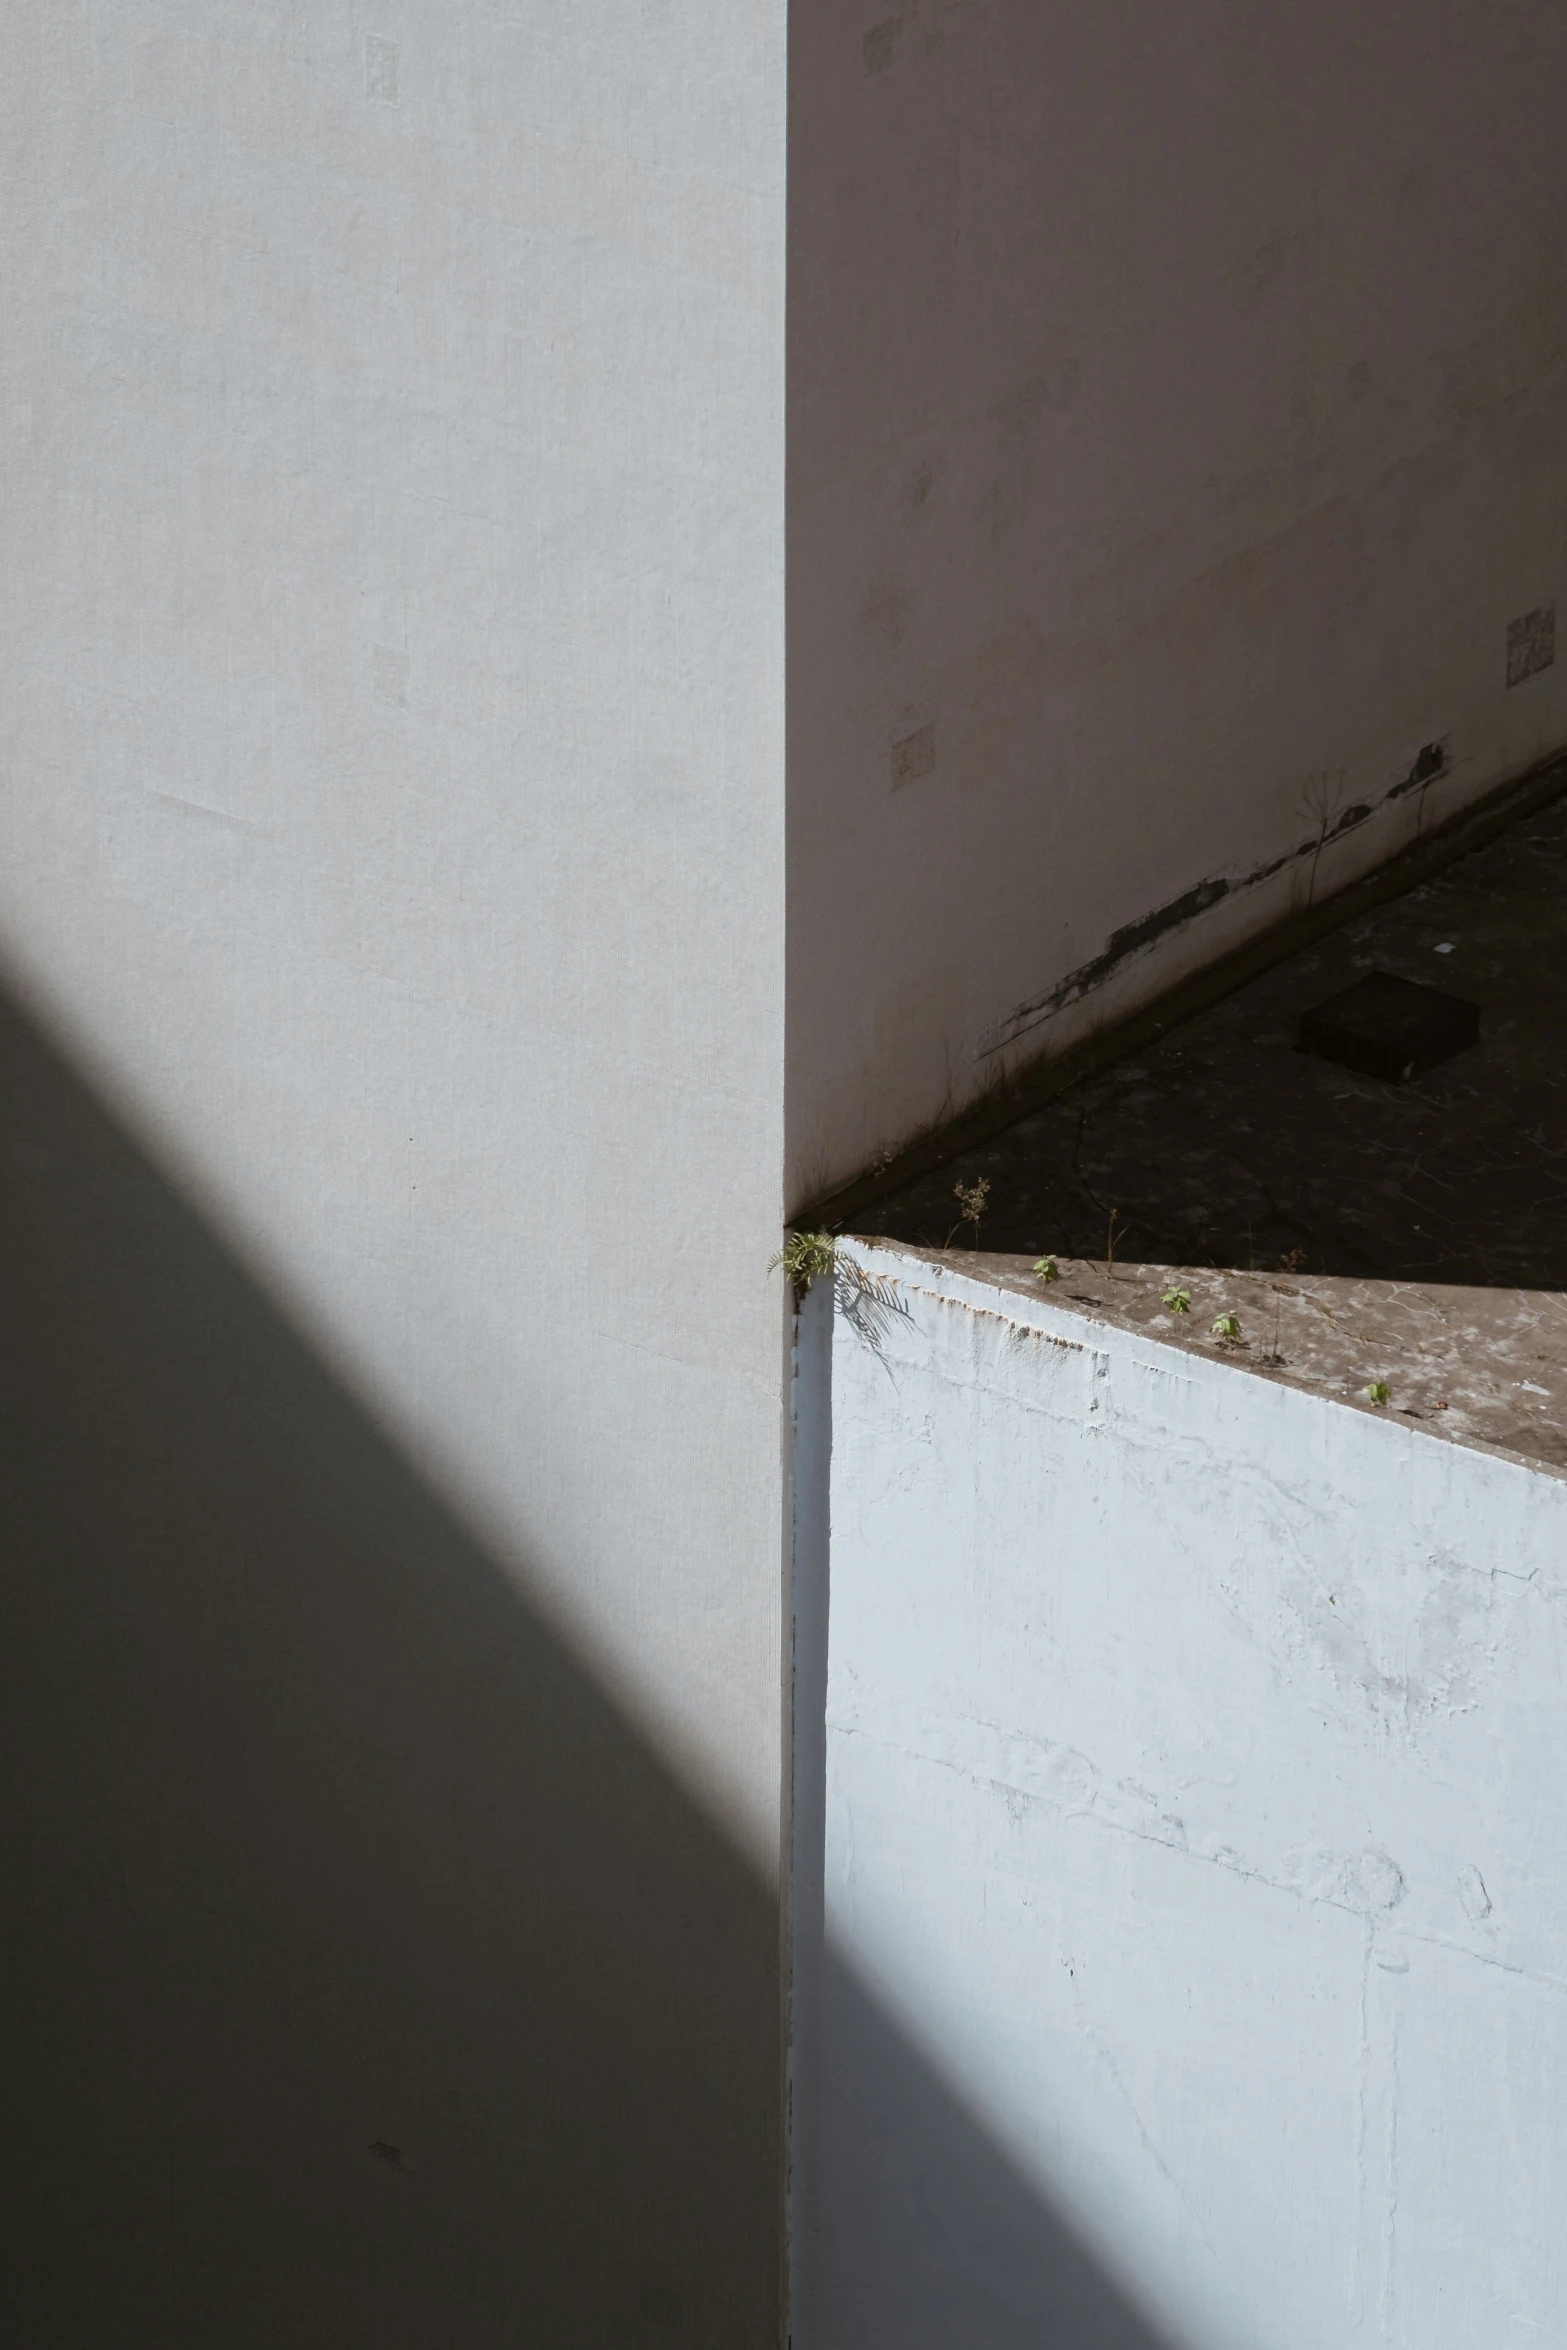 the shadow of a bird on a concrete pillar